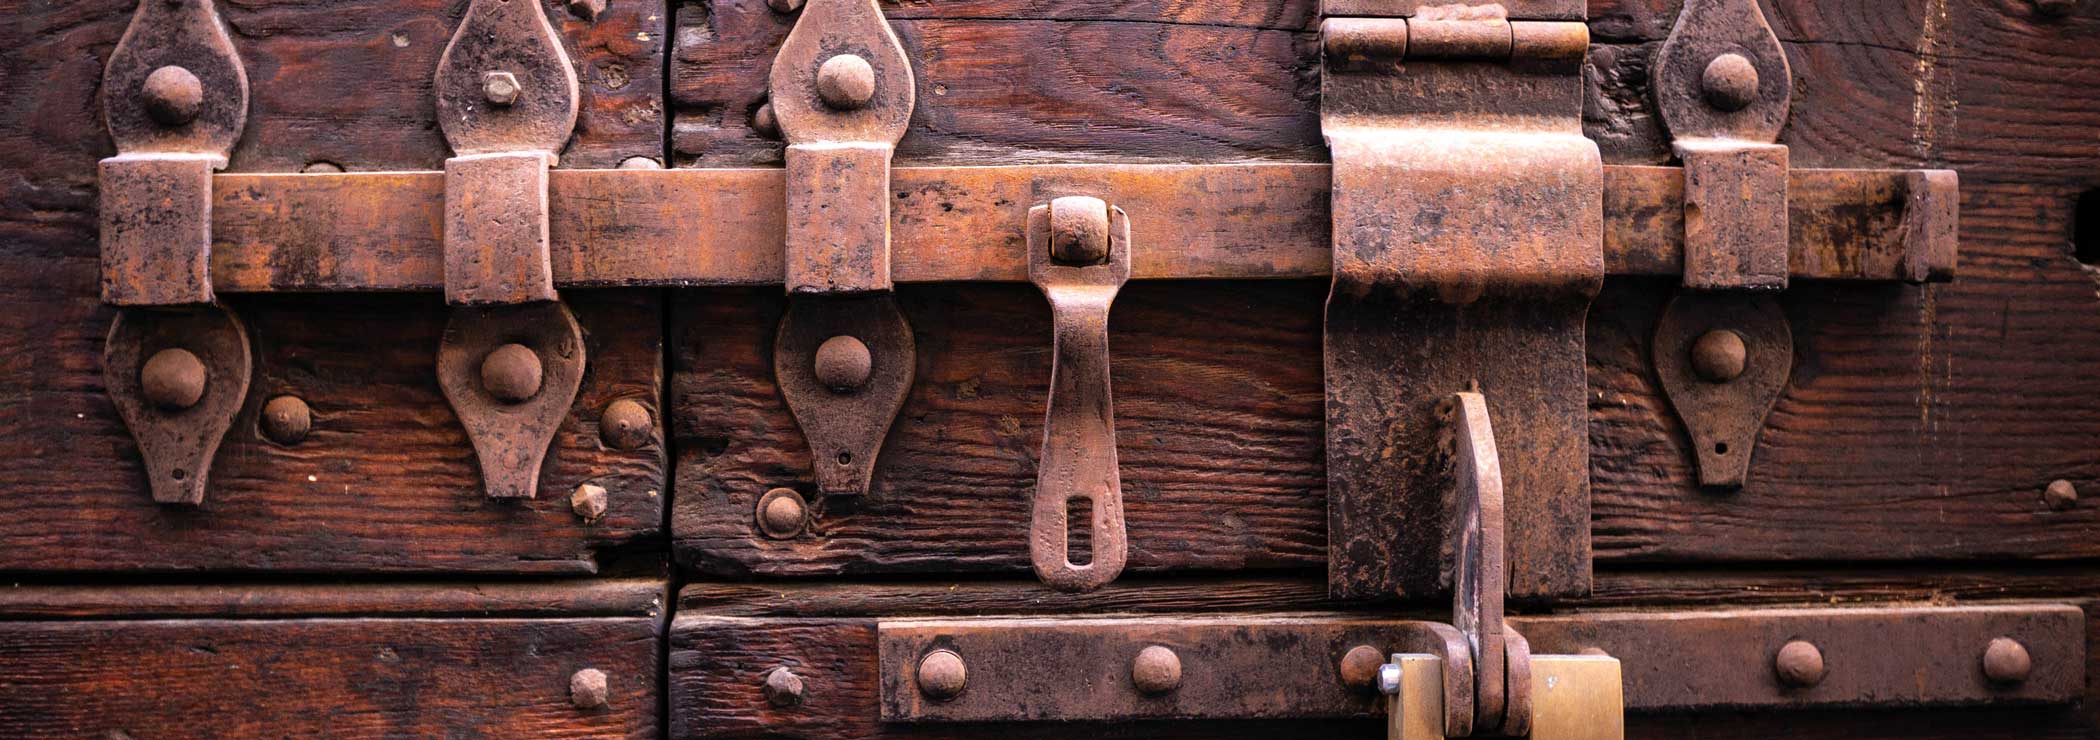 Antique lock